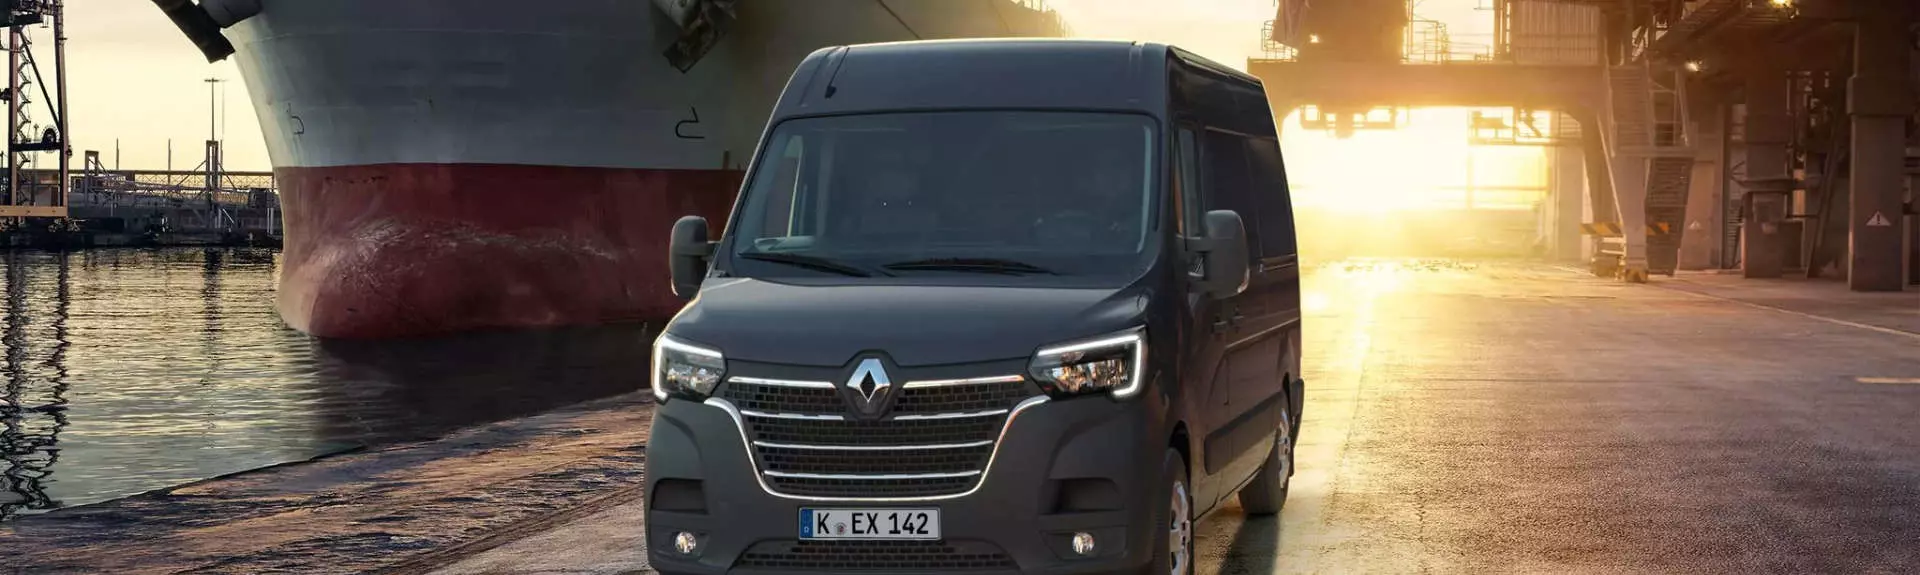 Renault Master Transporter für Firmenkunden und Handwerker